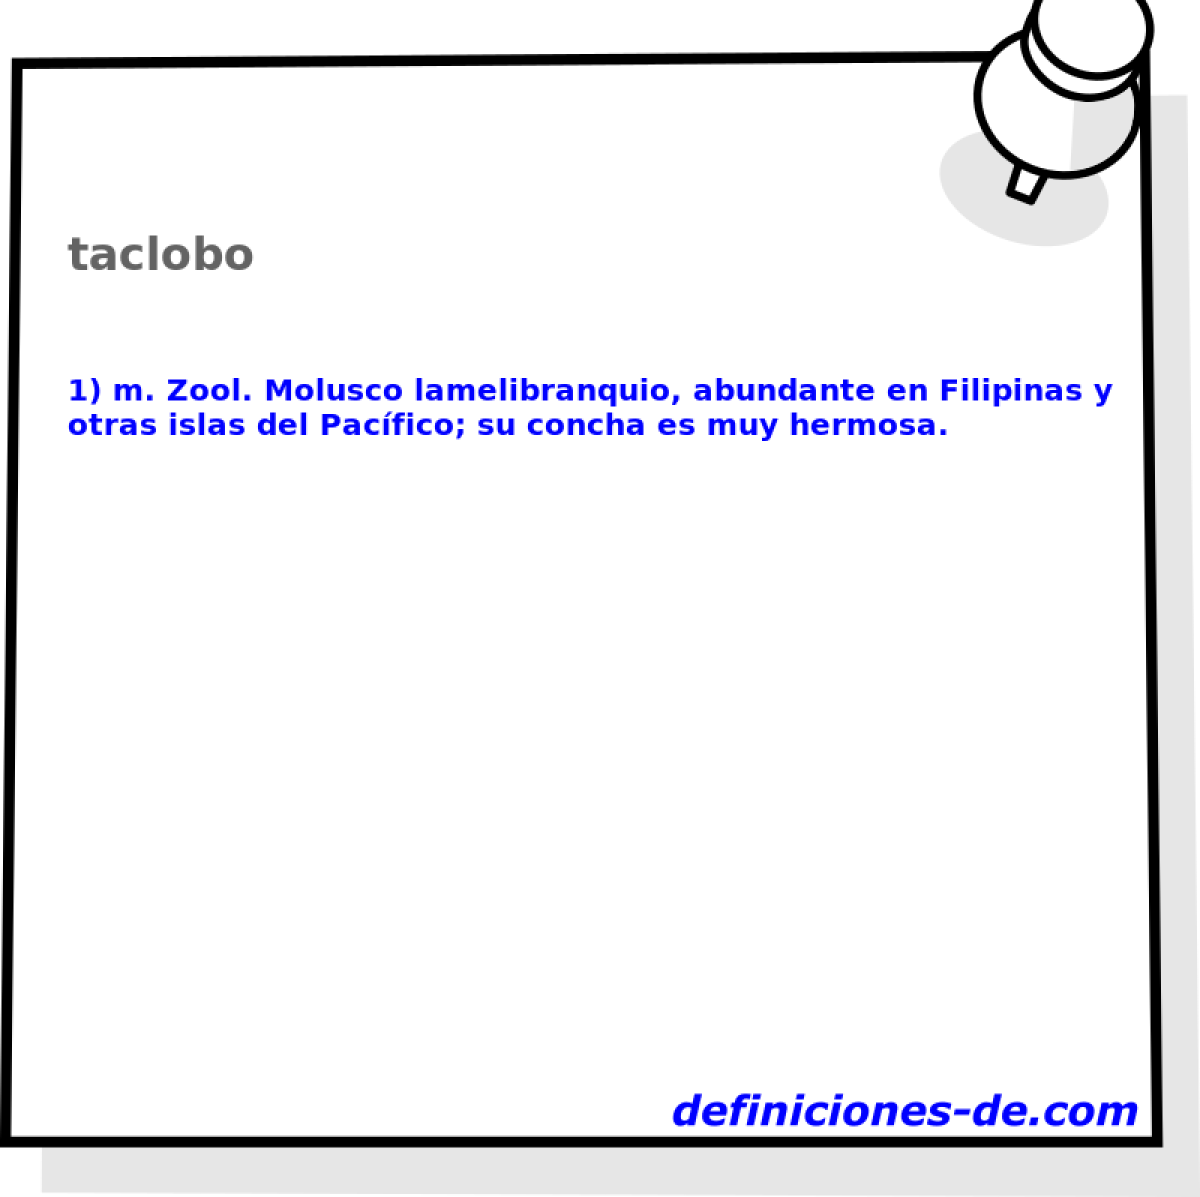 taclobo 